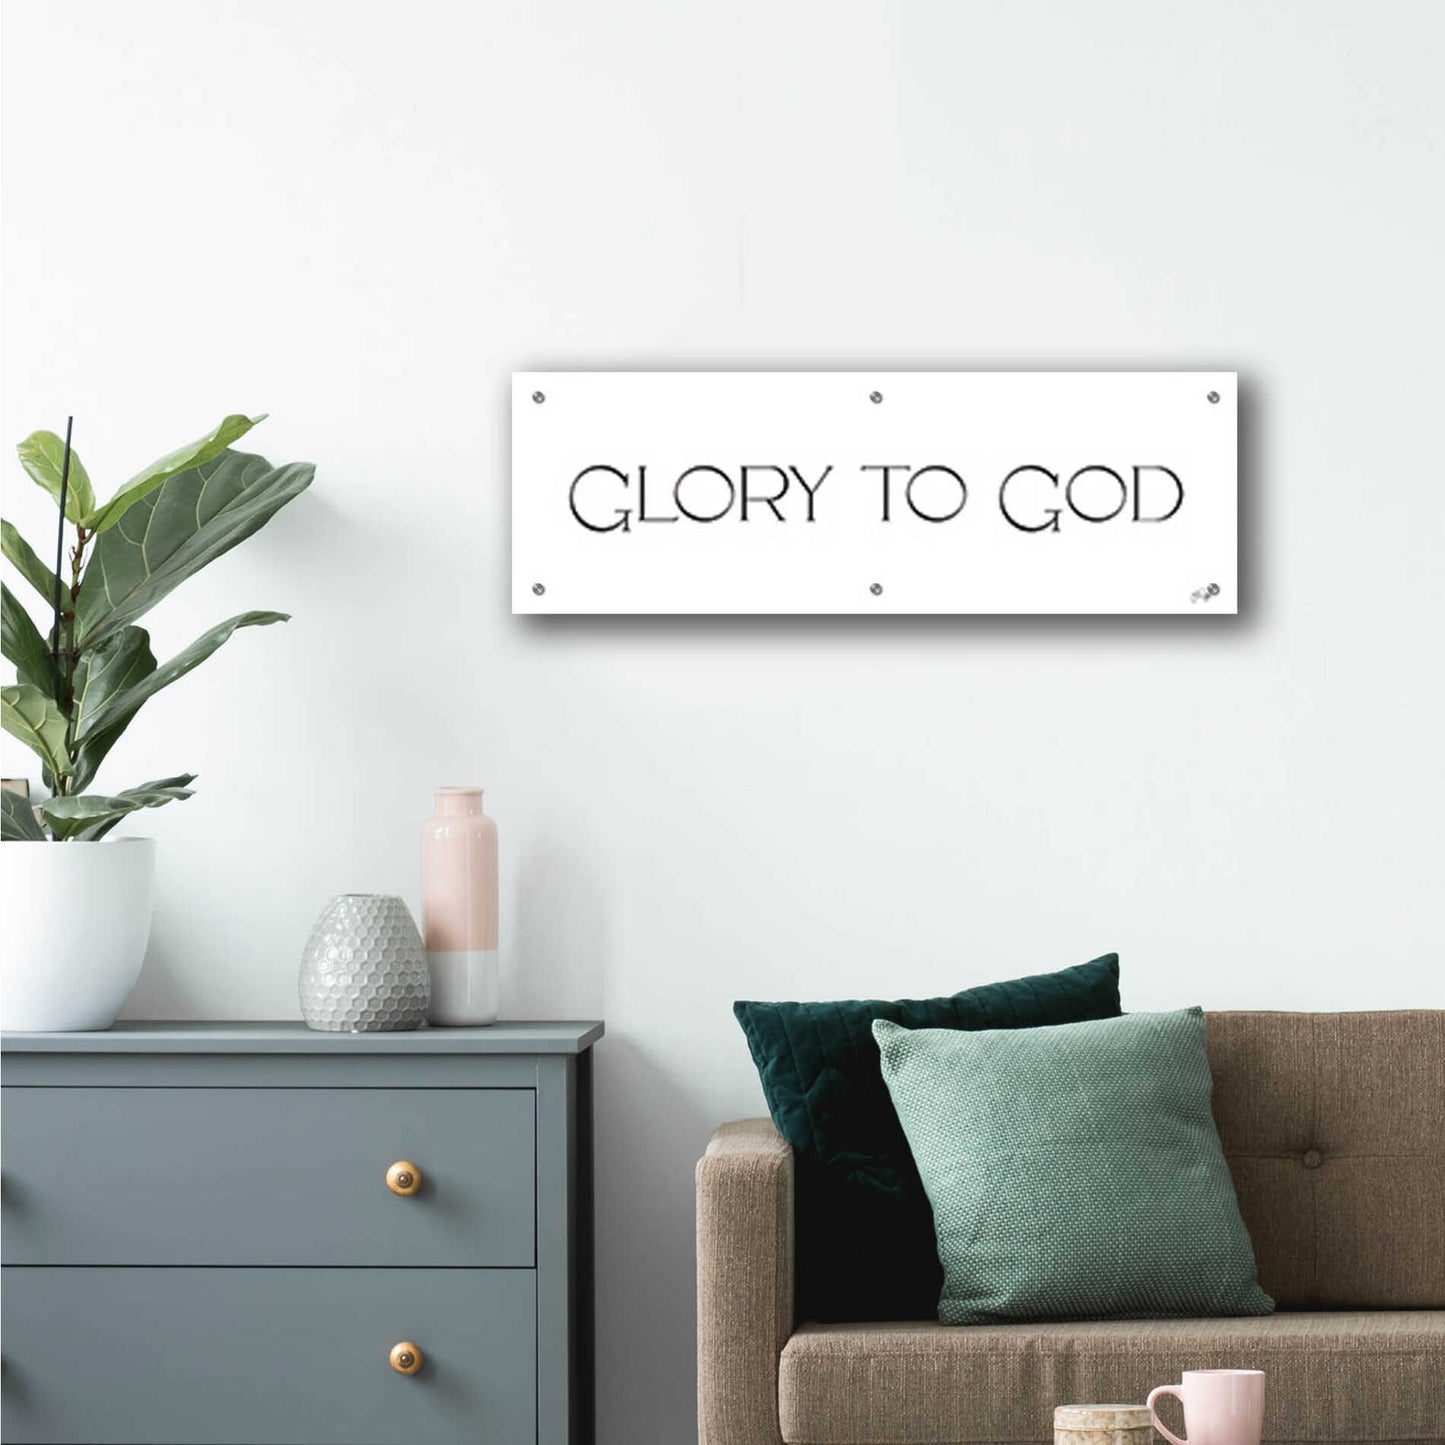 Epic Art 'Glory to God' by Yass Naffas Designs, Acrylic Glass Wall Art,36x12